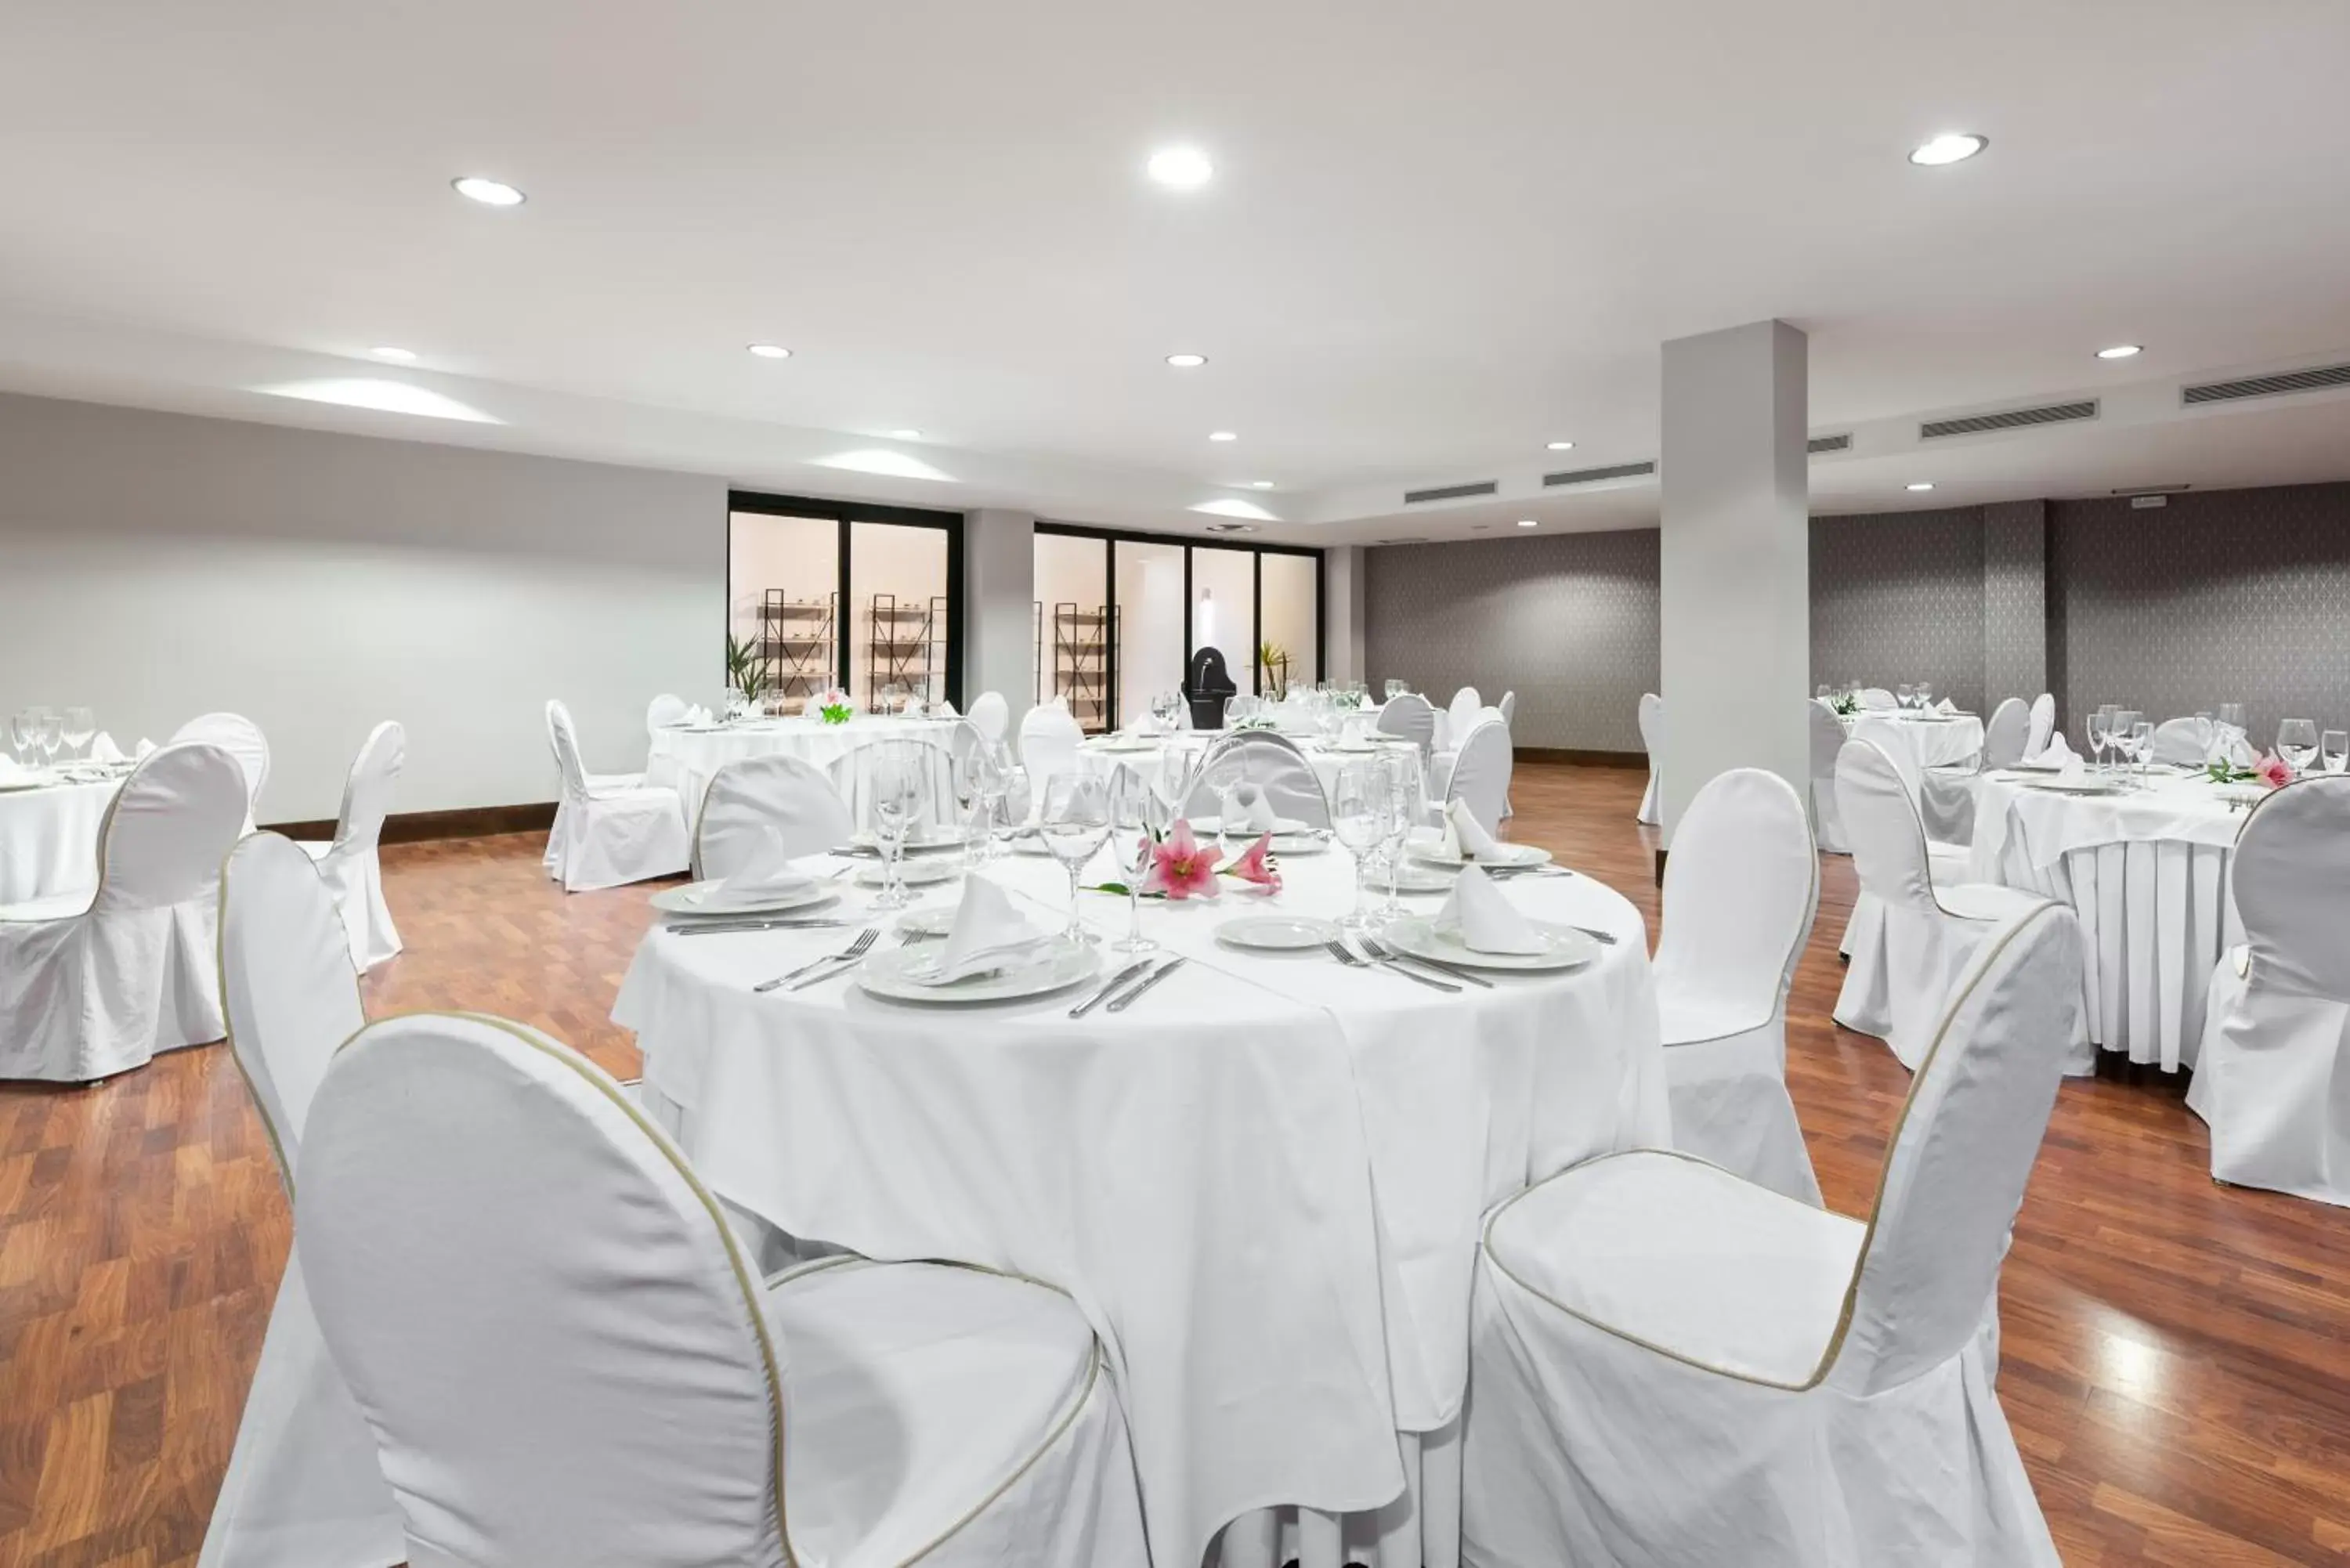 Banquet/Function facilities, Banquet Facilities in Exe Agora Cáceres